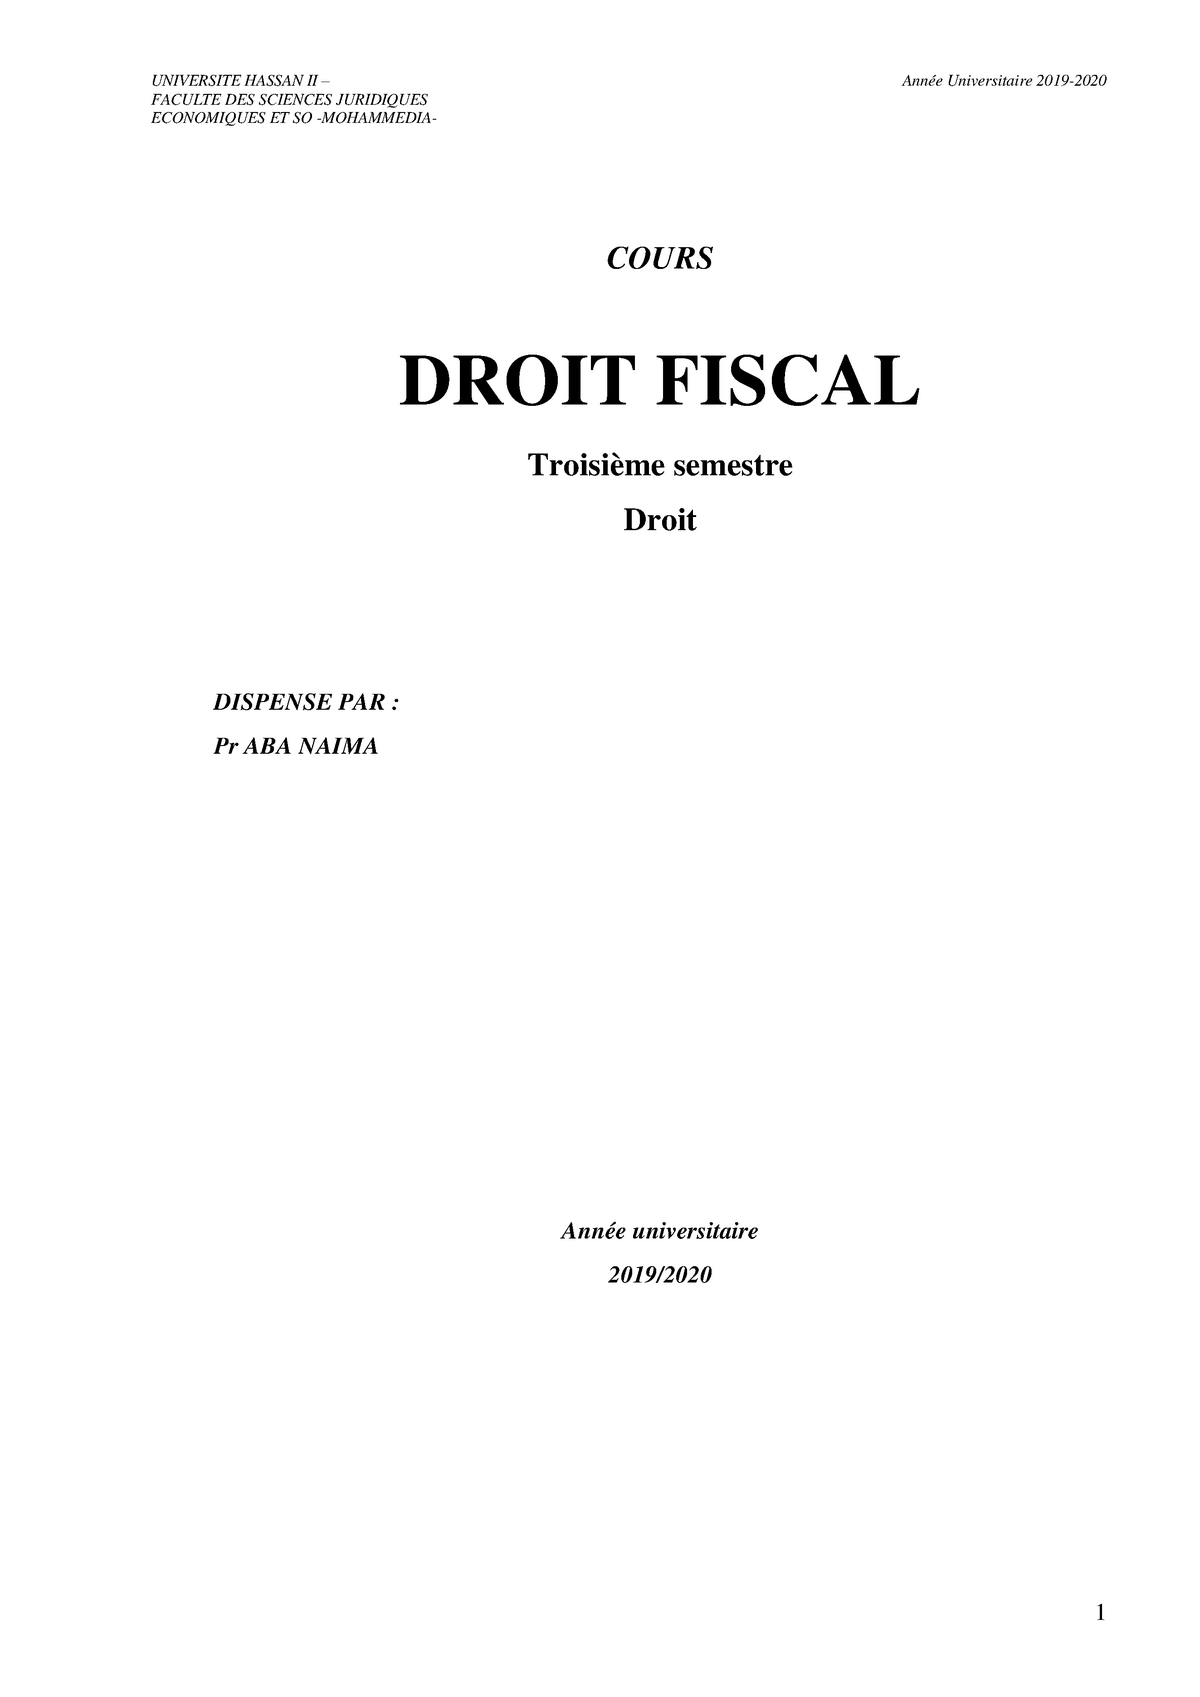 dissertation en droit fiscal